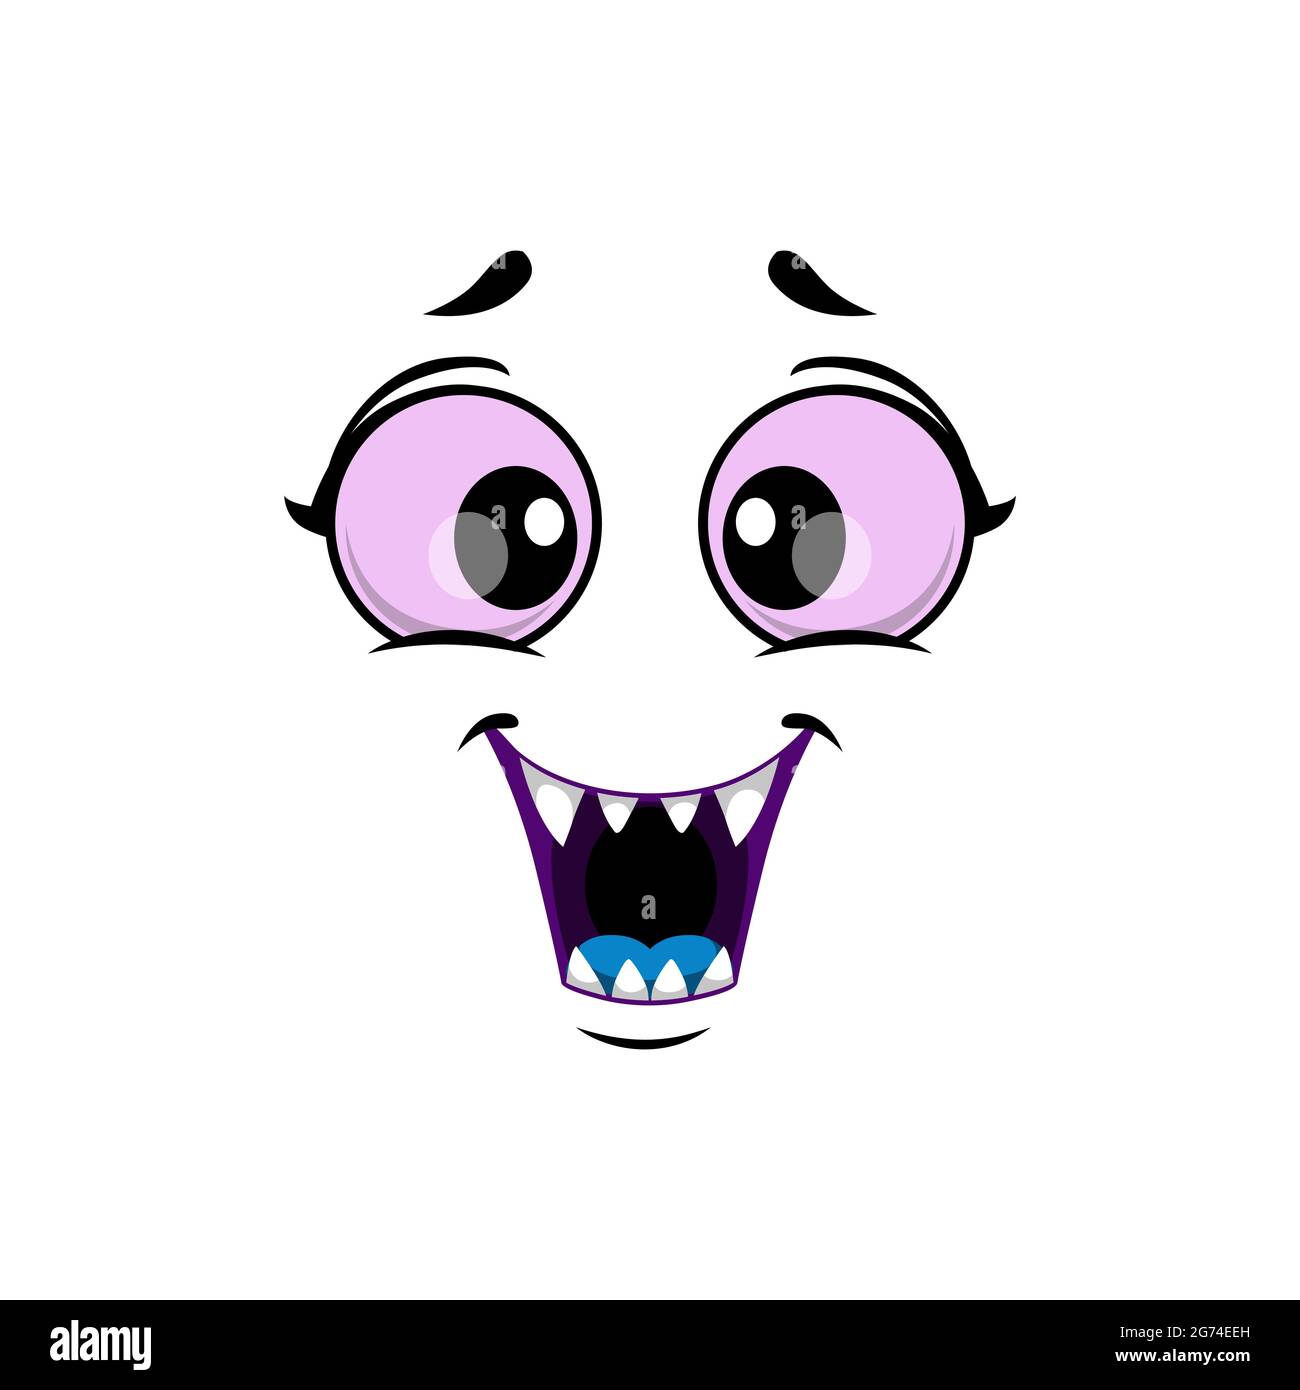 Cartoon Monster Gesicht isoliert Vektor-Symbol, lustige Gesichts-Emoji von Halloween Kreatur. Emotion toothy Lächeln mit großen lila runden Augen, Mund mit scharfen Stock Vektor